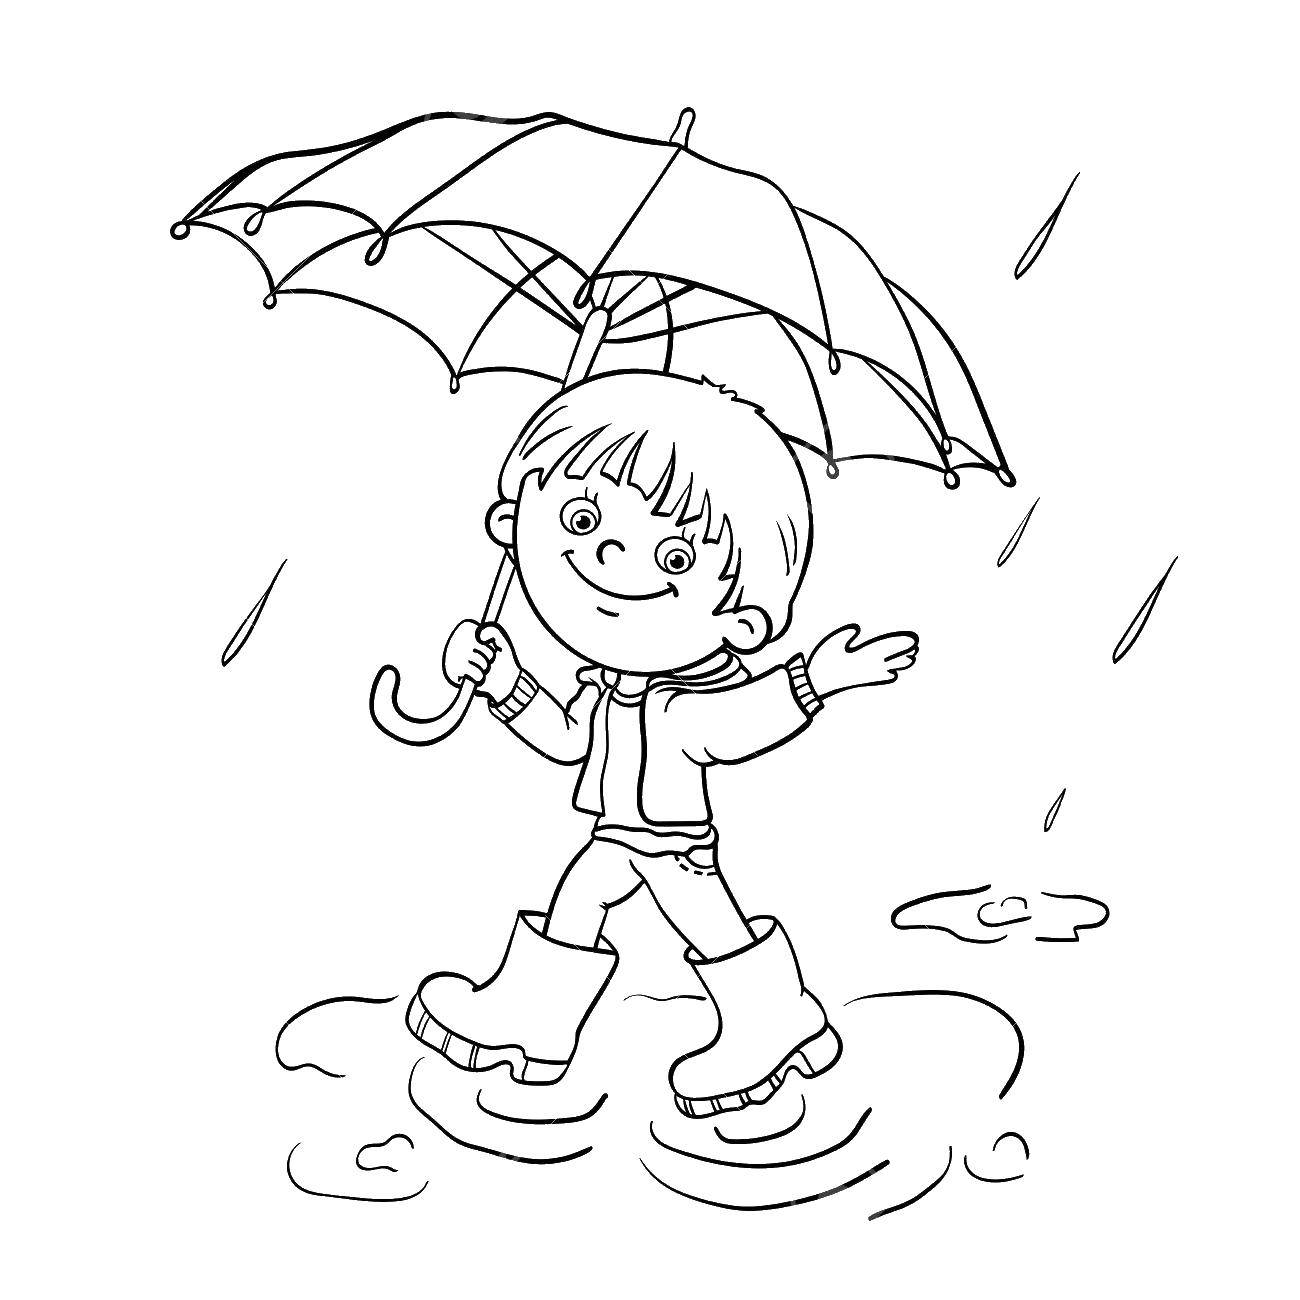 Название: Раскраска Мальчик в сапогах с зонтиком. Категория: контур мальчика. Теги: мальчик, зонт.